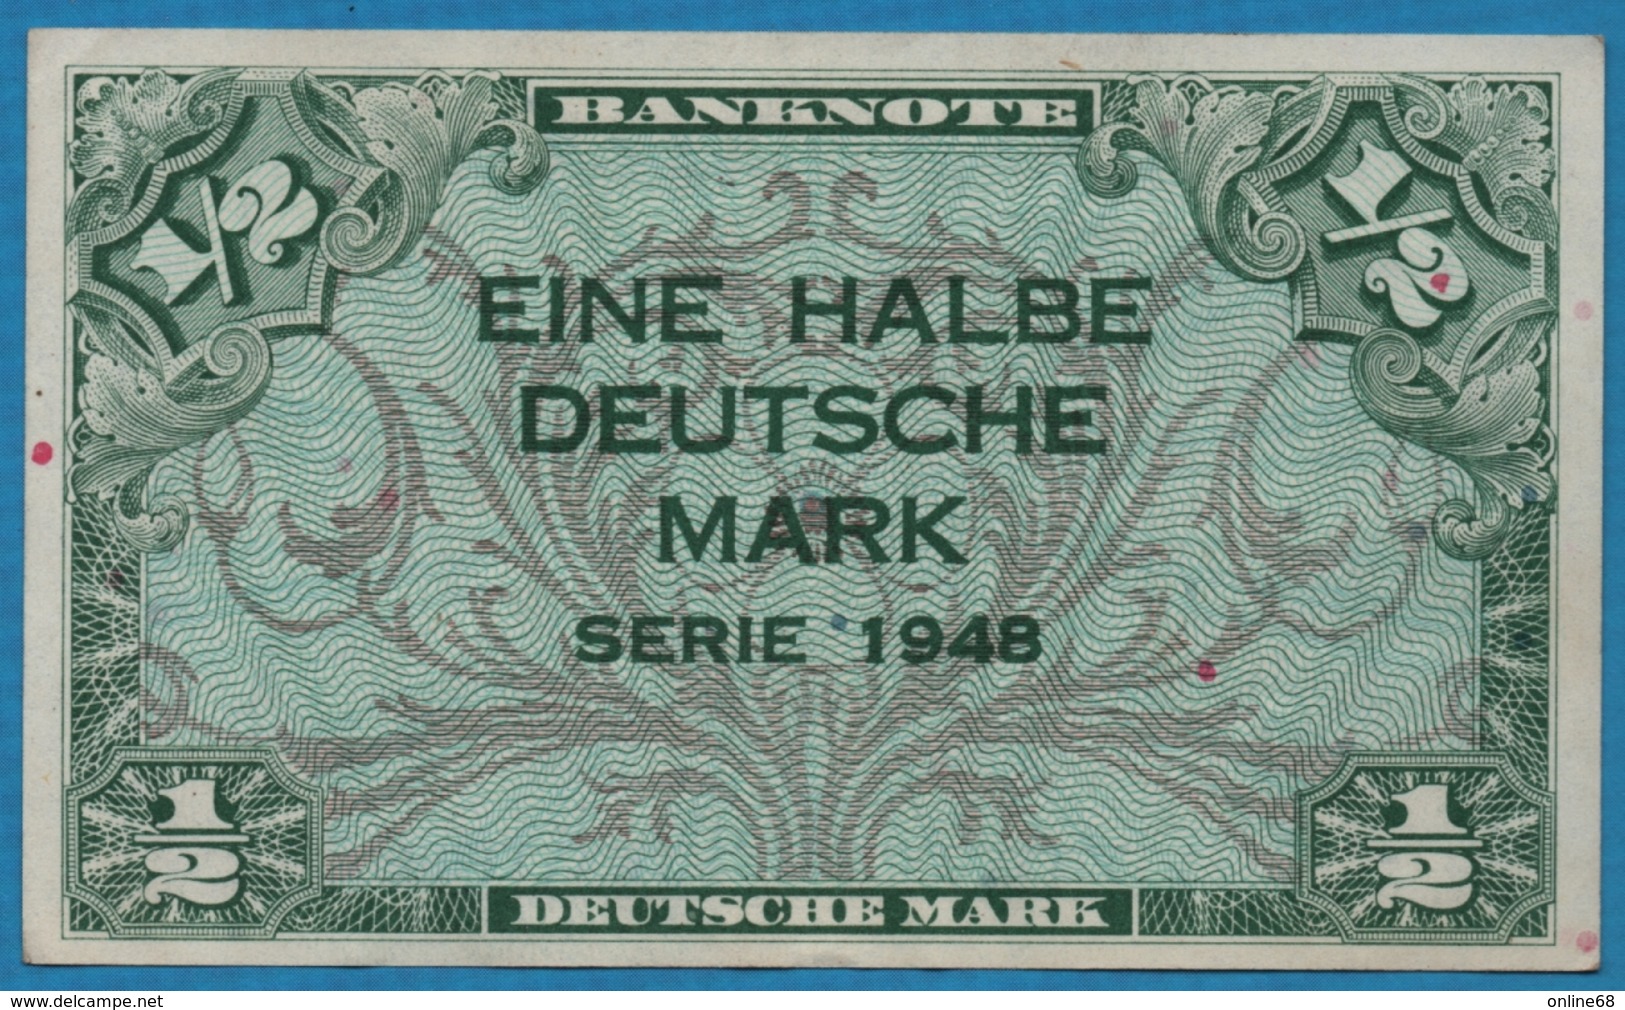 DEUTSCHLAND U.S. ARMY COMMAND 	1/2 Deutsche Mark	1948 P# 1a - 1/2 Mark